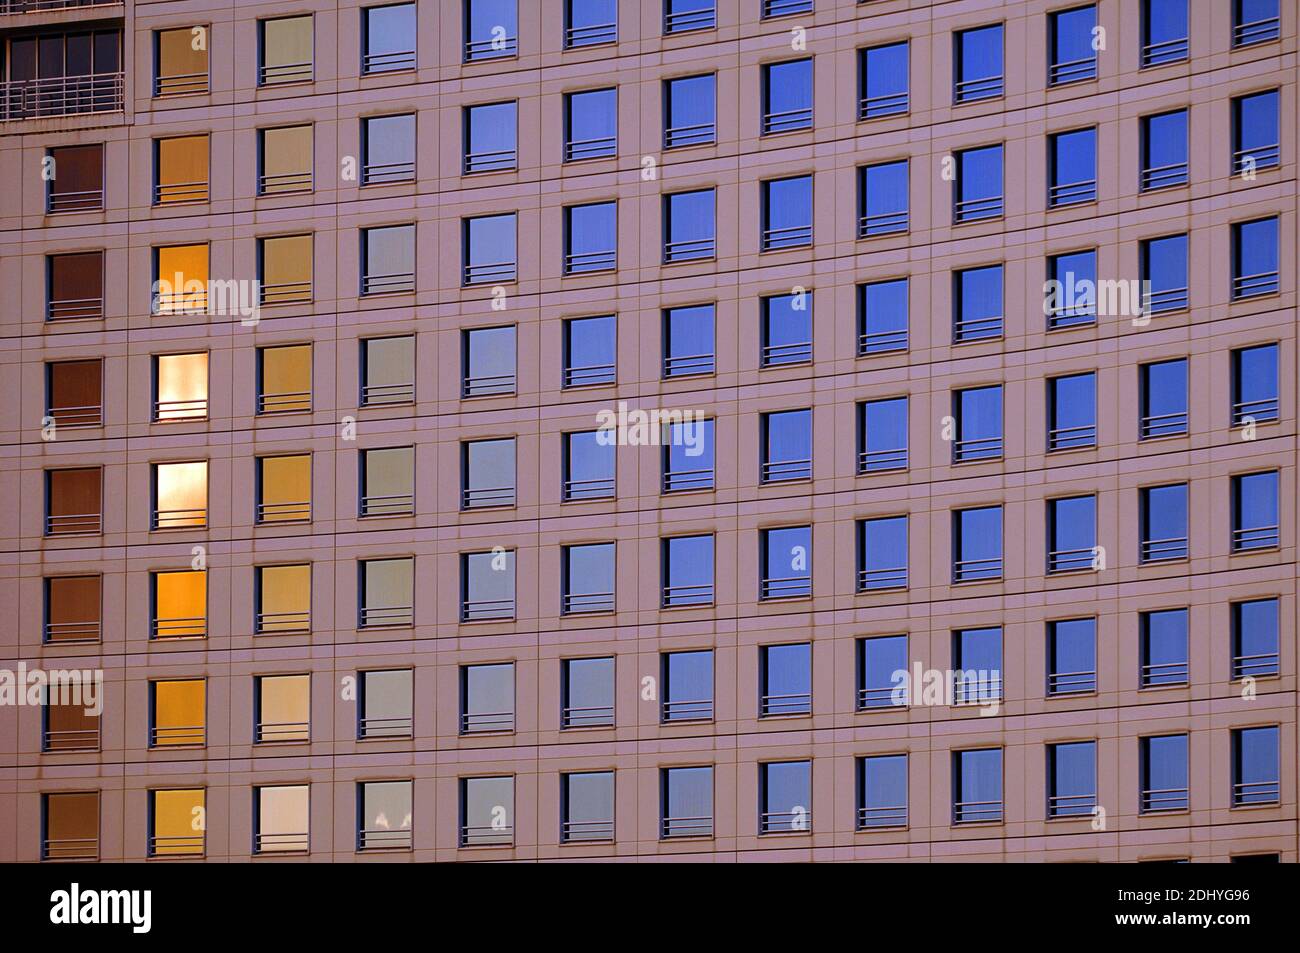 Bürogebäude in der Abendsonne - Sydney - Australien Stock Photo